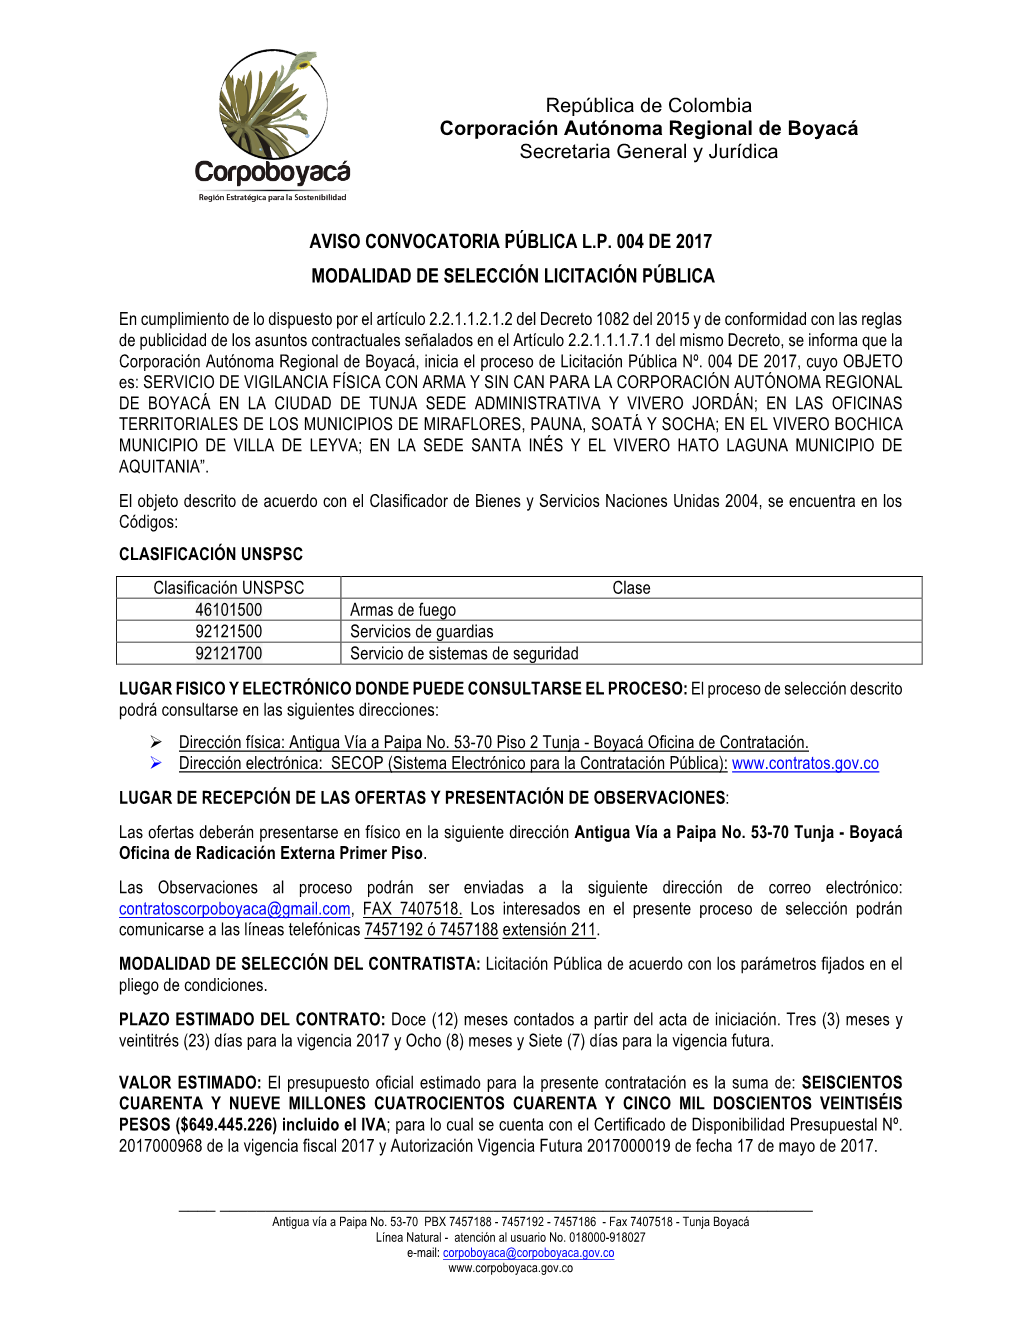 República De Colombia Corporación Autónoma Regional De Boyacá Secretaria General Y Jurídica